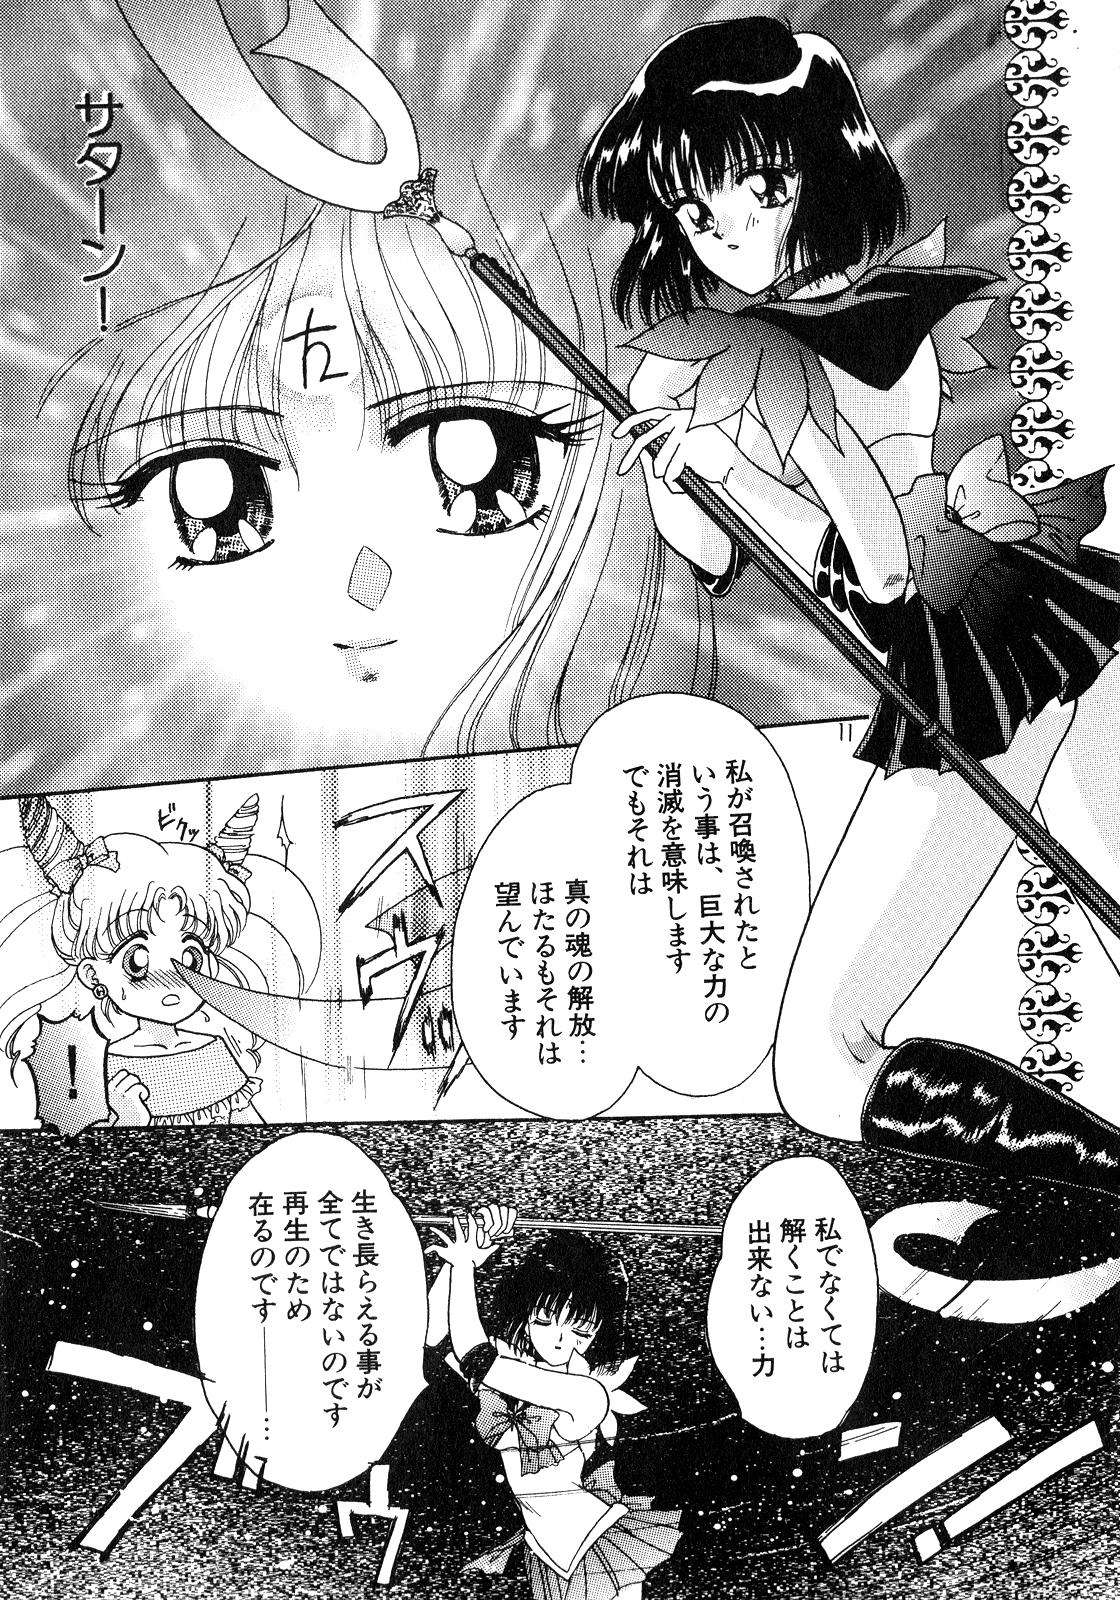 Butt Plug Lunatic Party 8 - Sailor moon Voyeur - Page 10